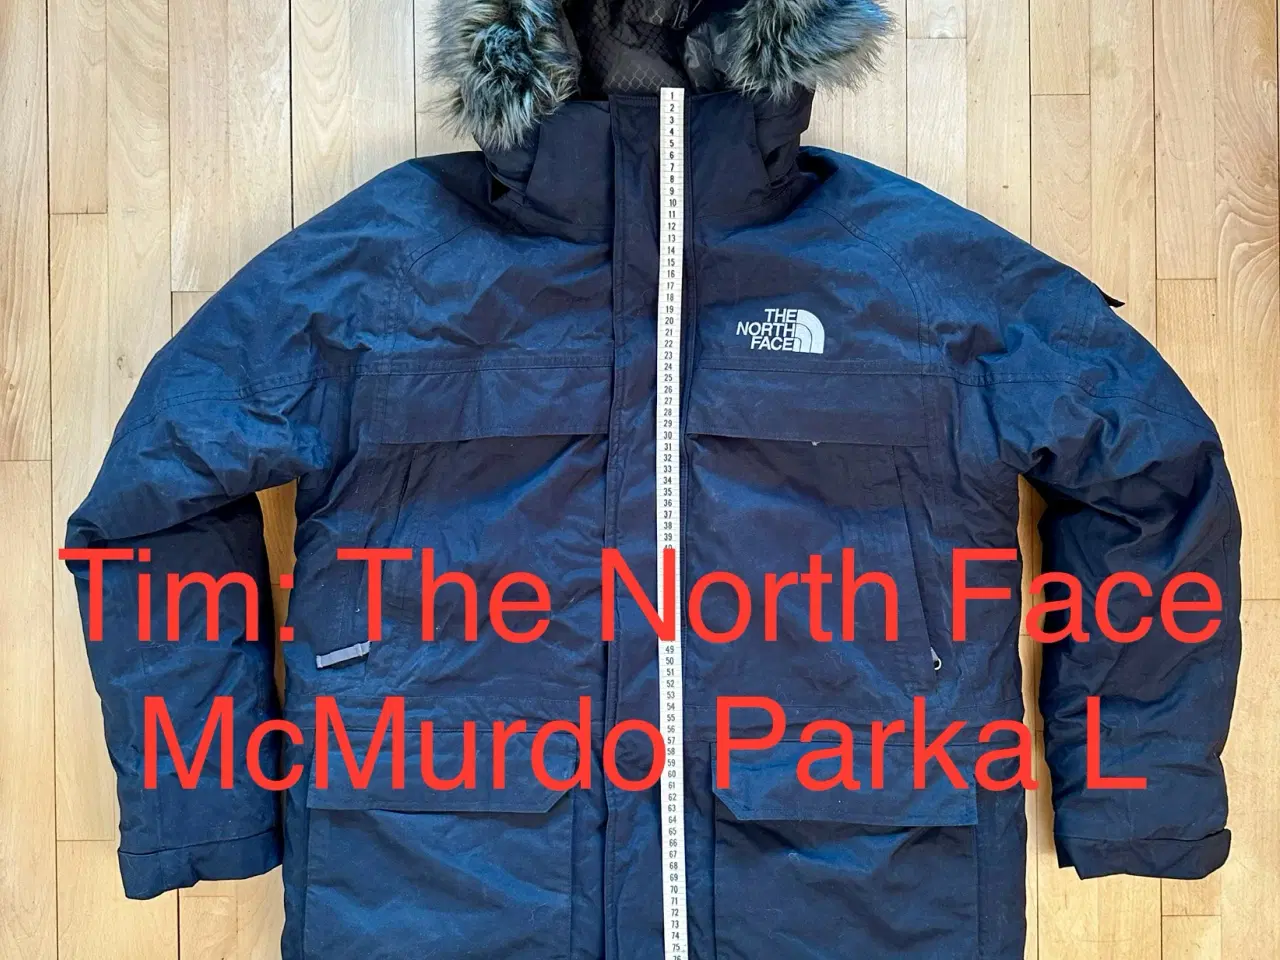 Billede 1 - The North Face McMurdo Parka L 